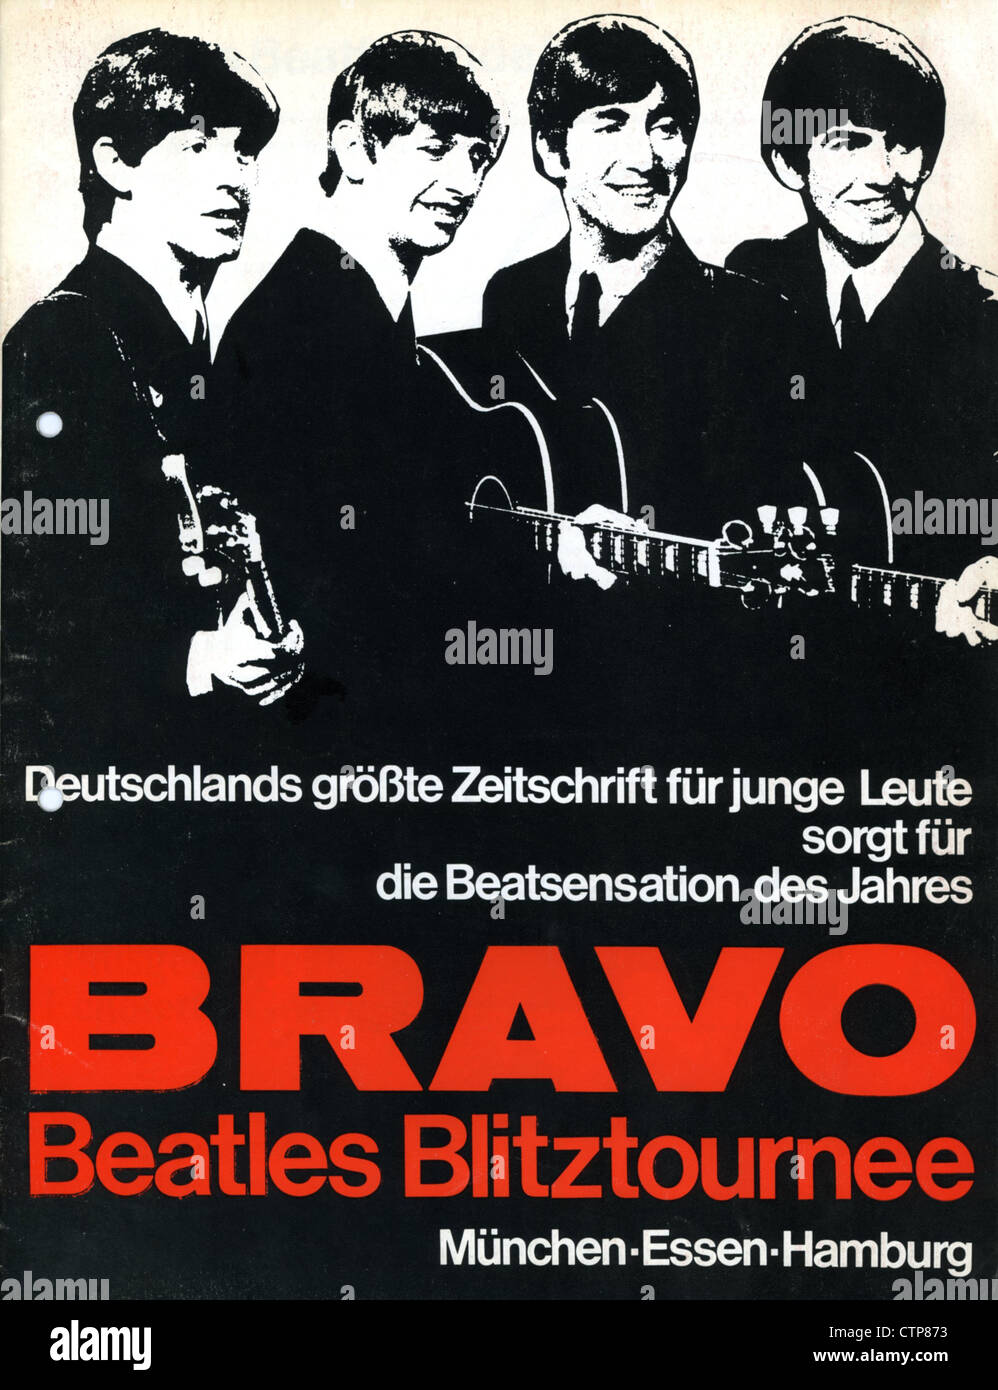 004820 - Bravo Beatles Blitztournee Juin 1966 Programme du concert allemand Banque D'Images